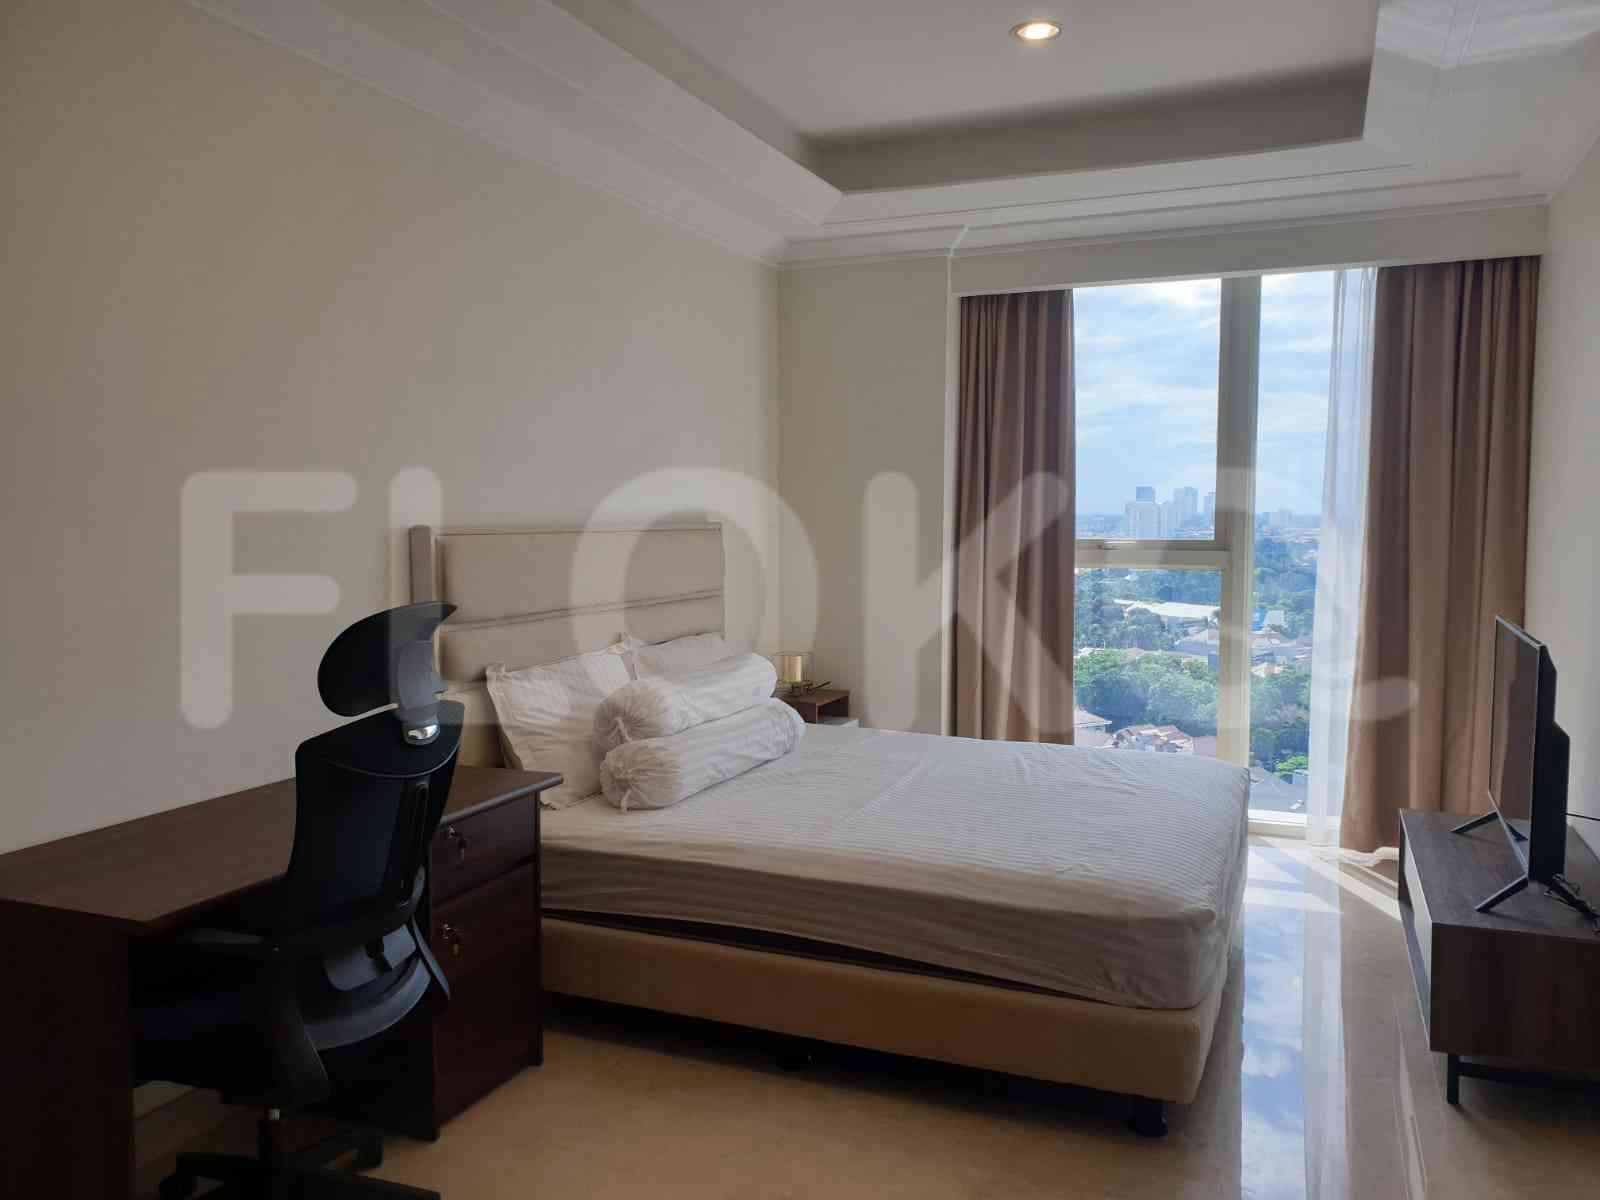 3 Bedroom on 15th Floor for Rent in Pondok Indah Residence - fpo34e 5